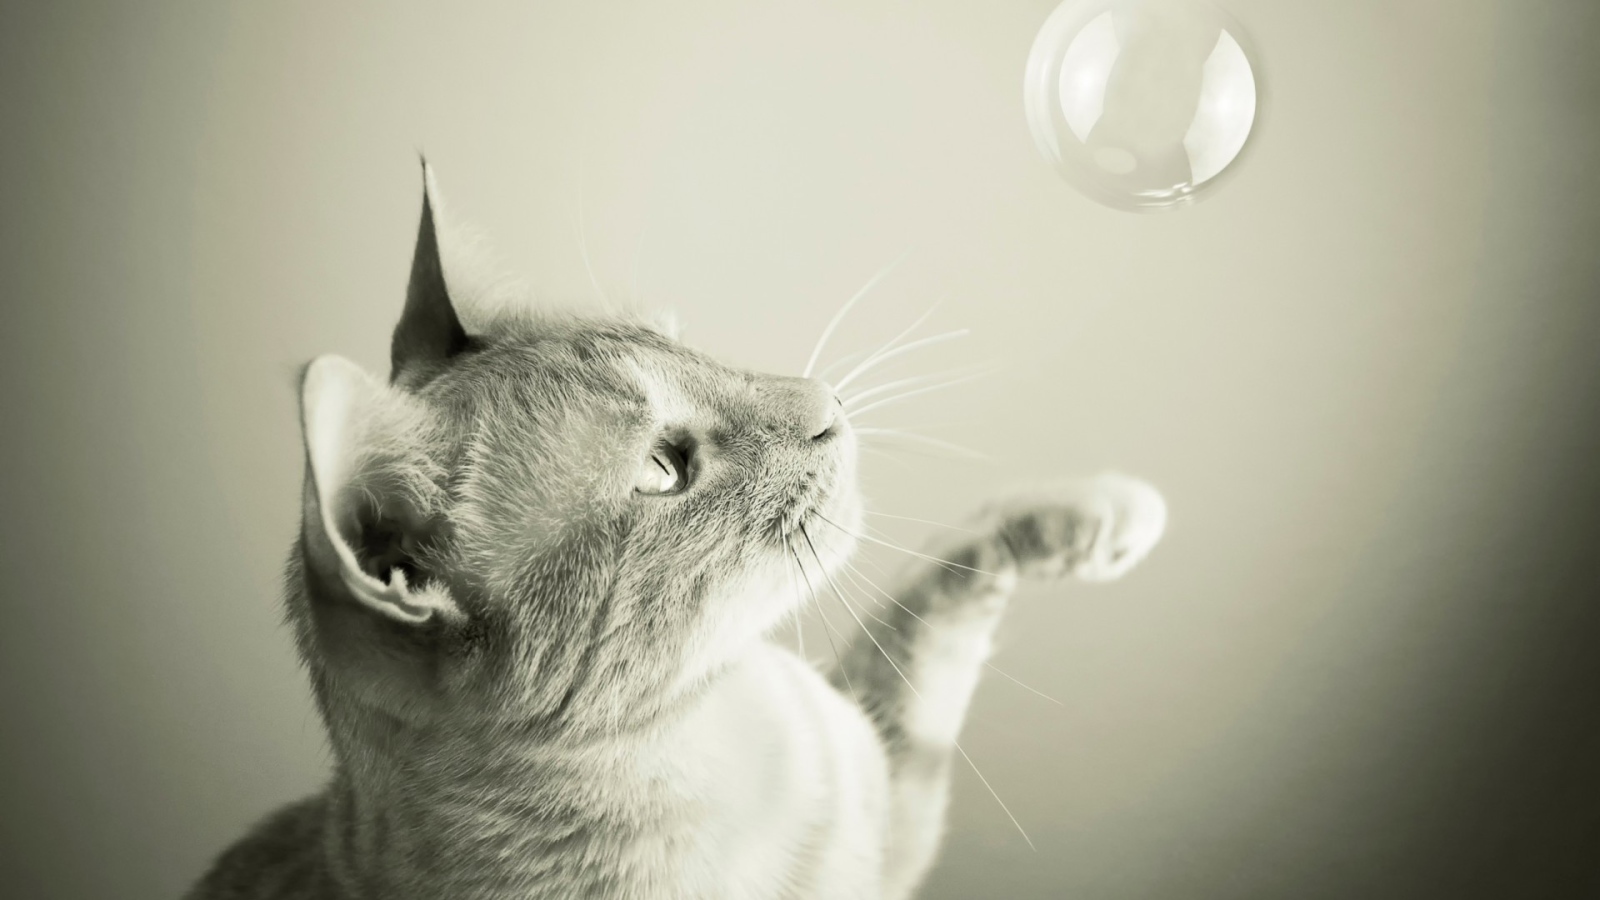 Cat catches a soap bubble